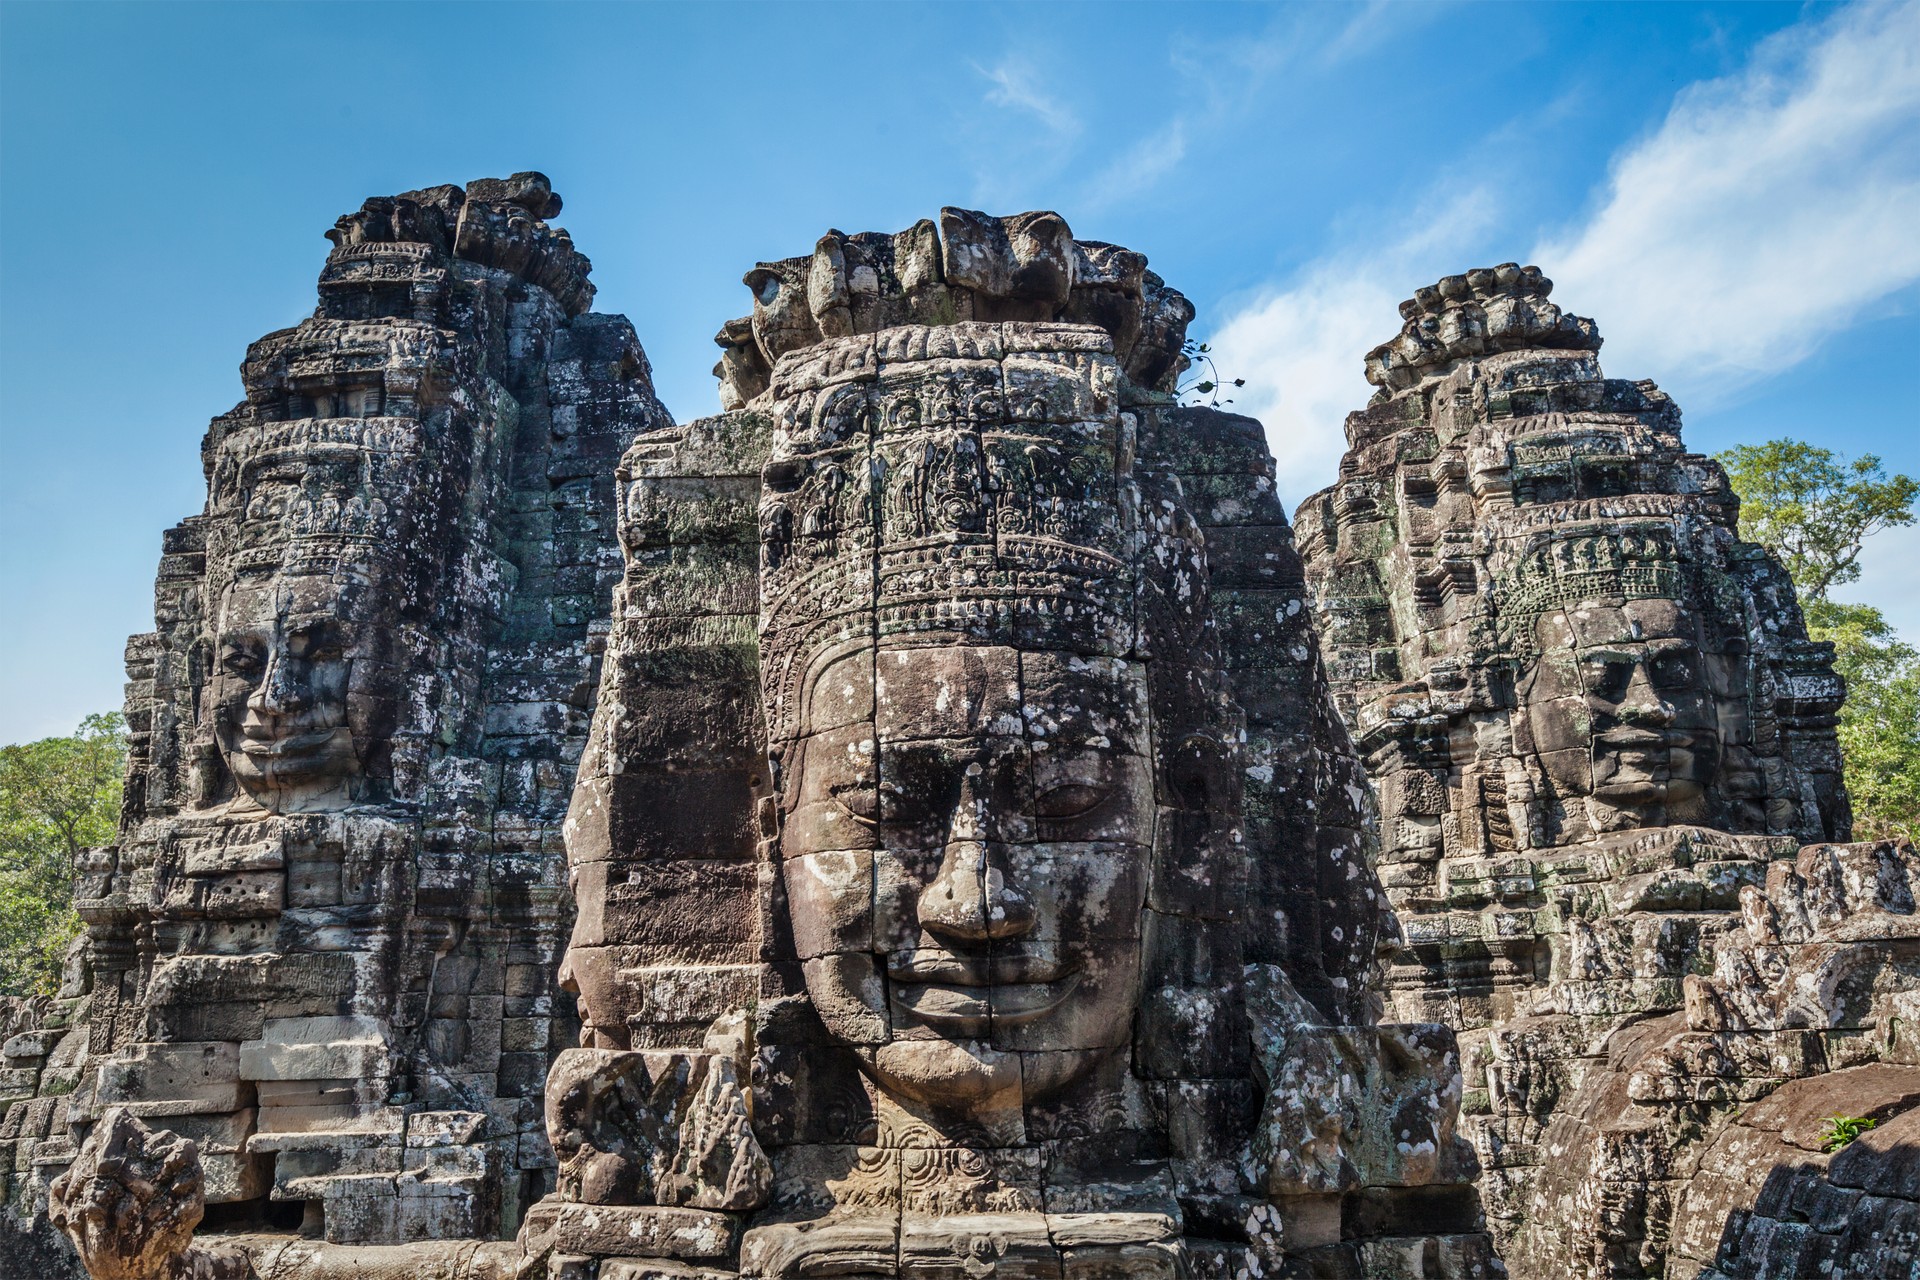 The Angkors